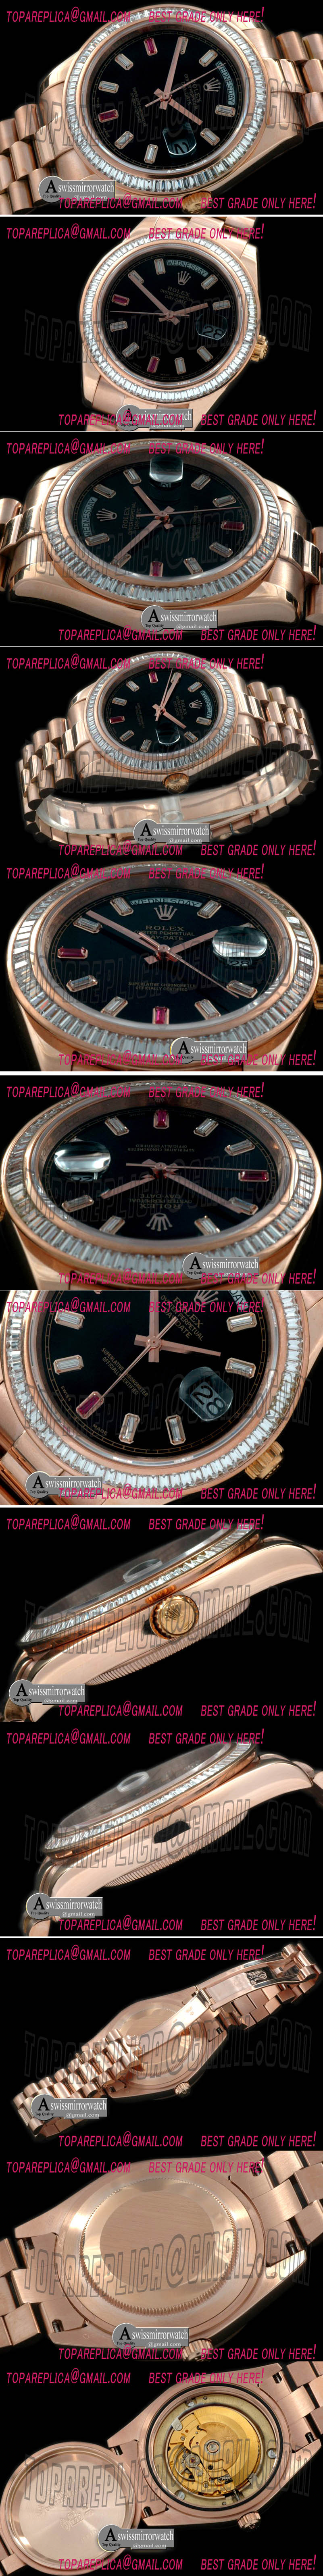 Replica Rolex Day Date II Watches